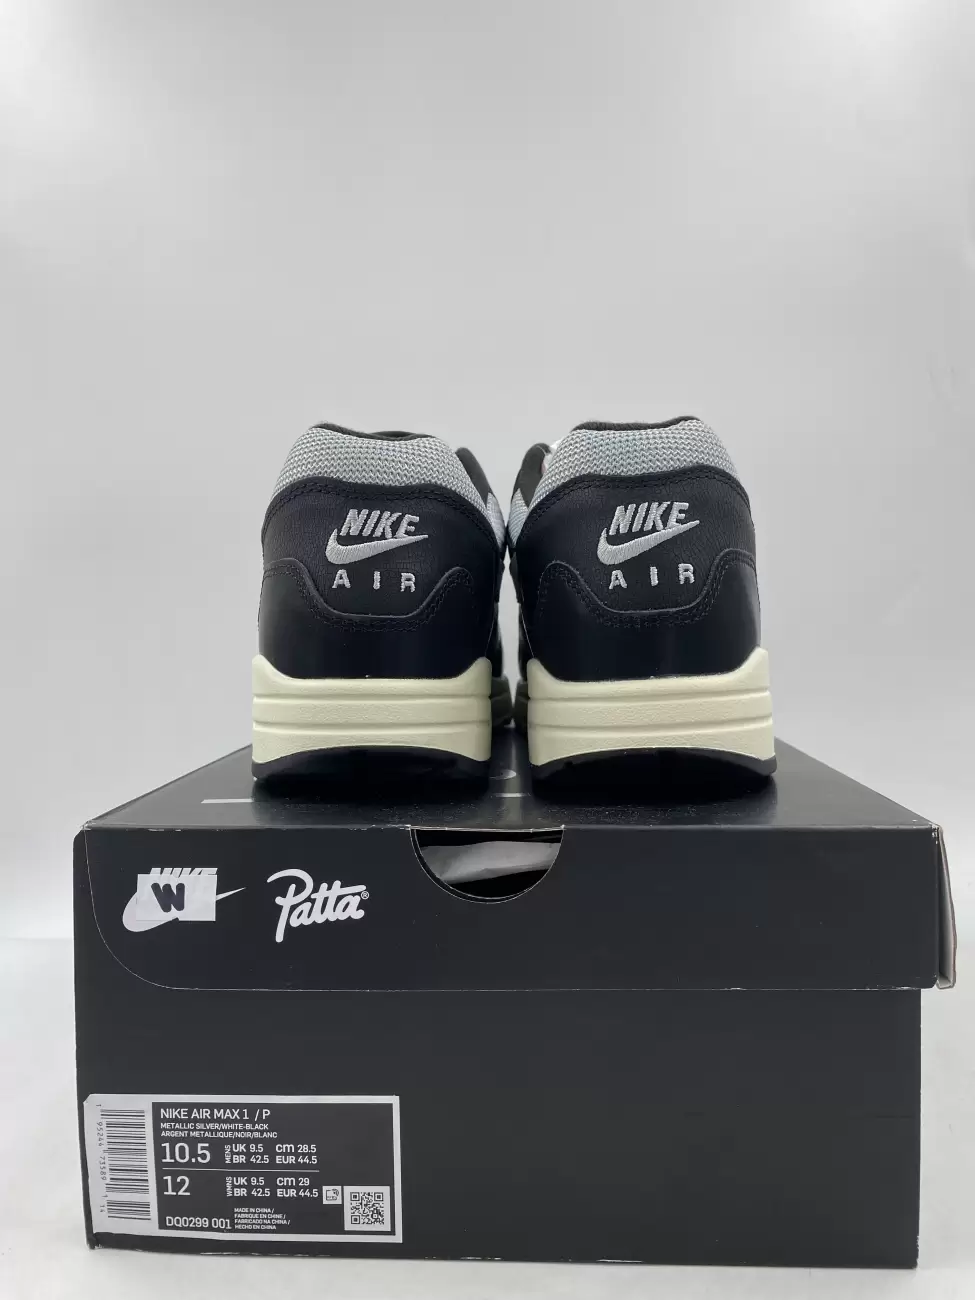 Patta x Nike Air Max 1 Black DQ0299-001